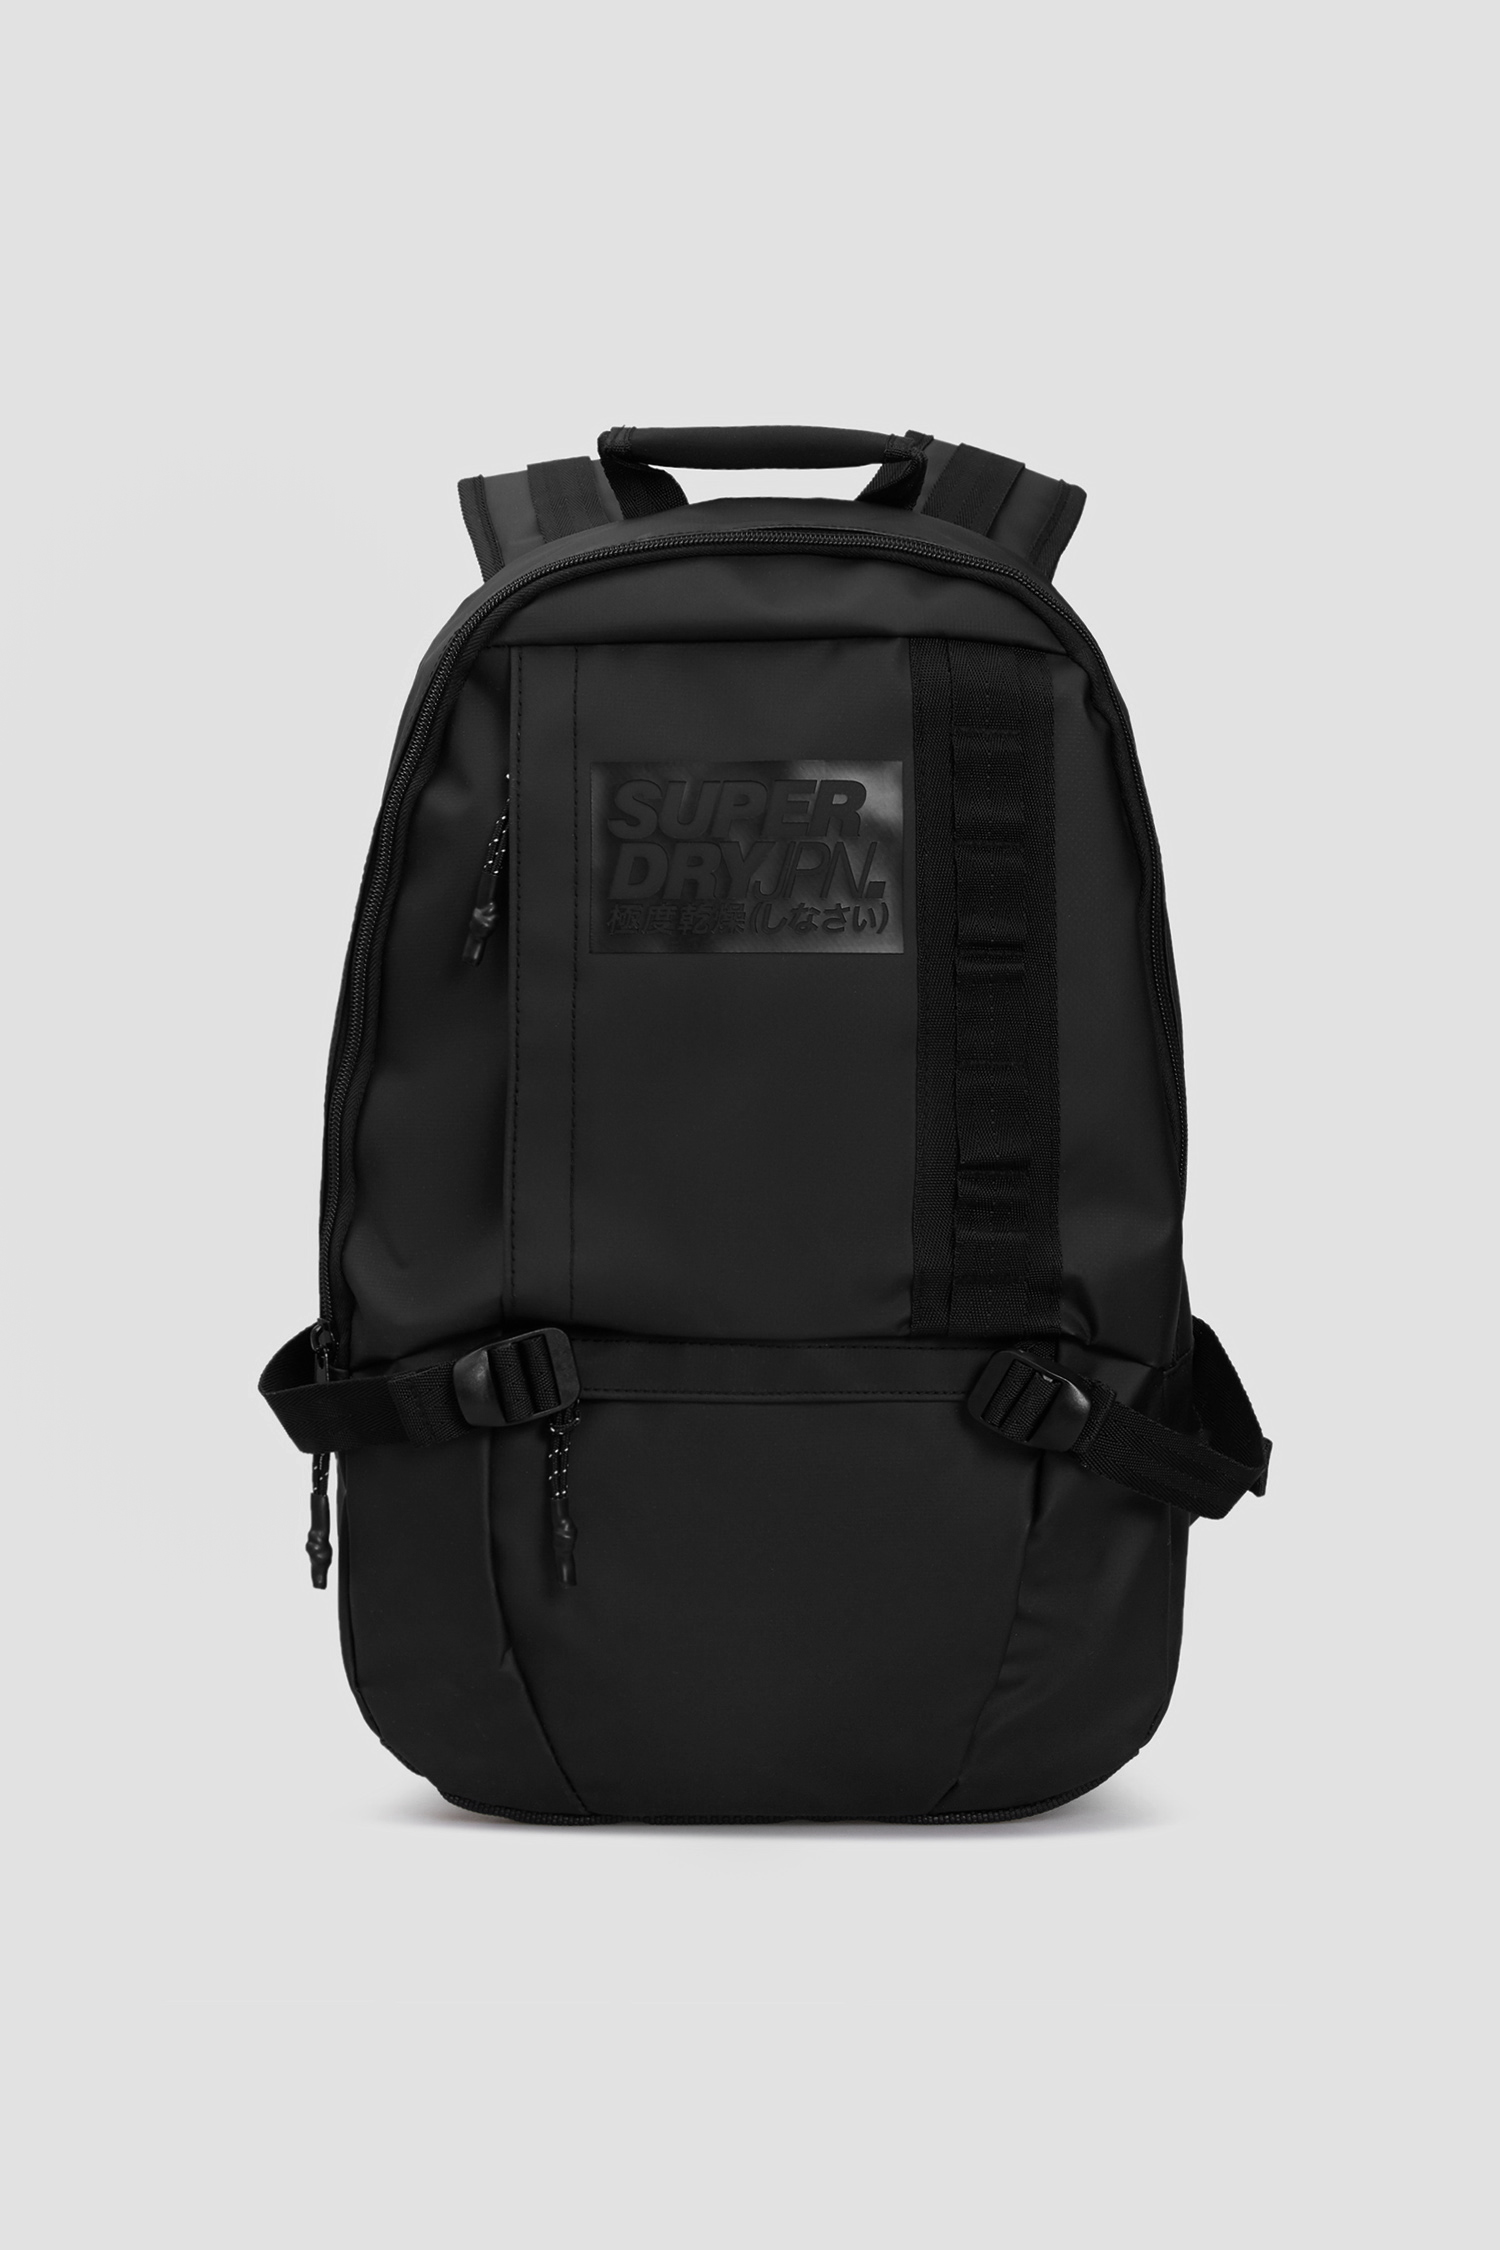 Чоловічий чорний рюкзак SuperDry M9110053A;02A